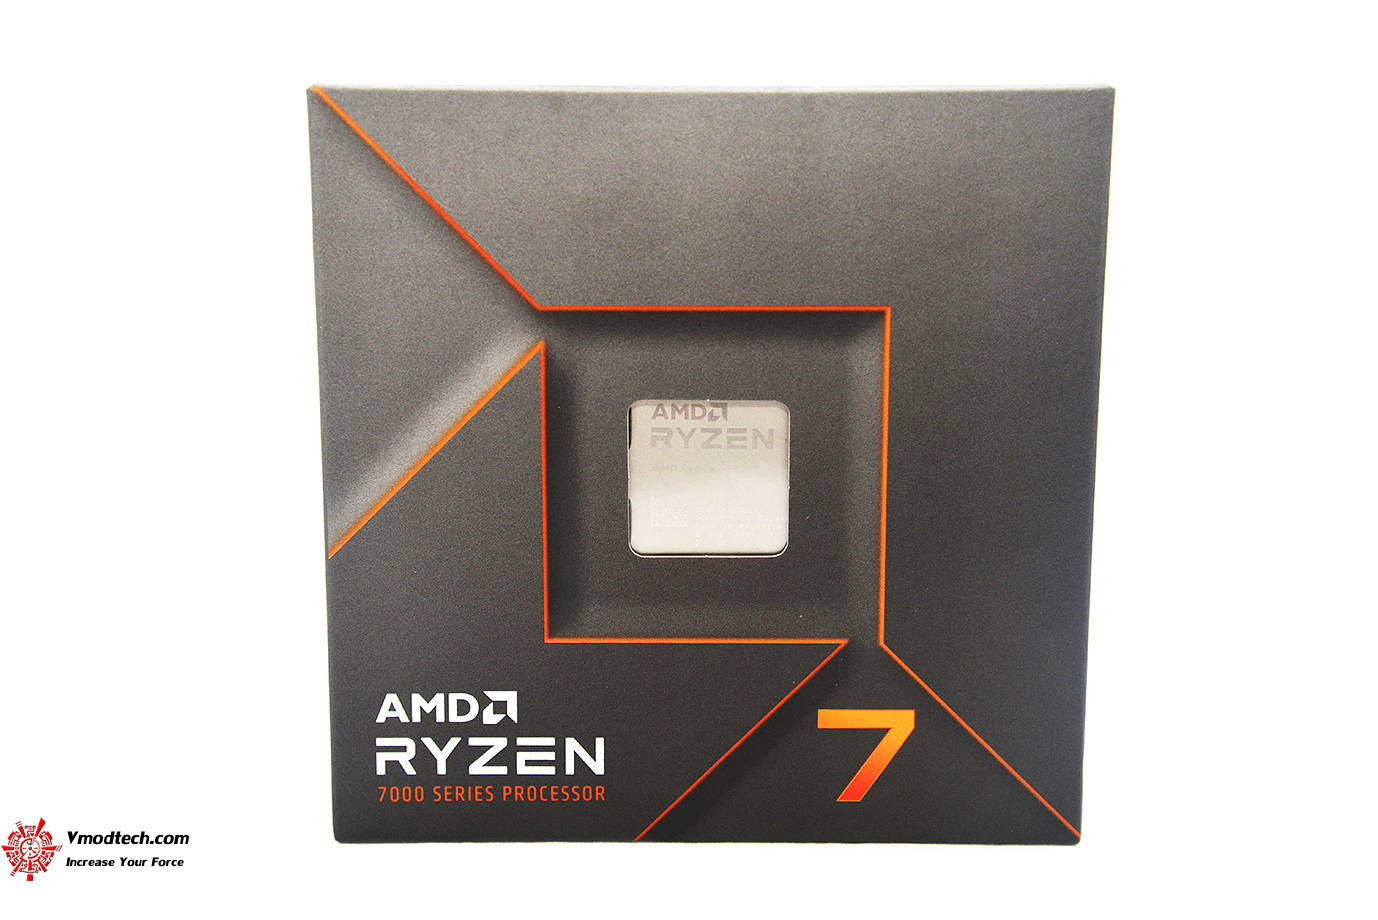 dsc 2016 AMD RYZEN 7 7700X PROCESSOR REVIEW